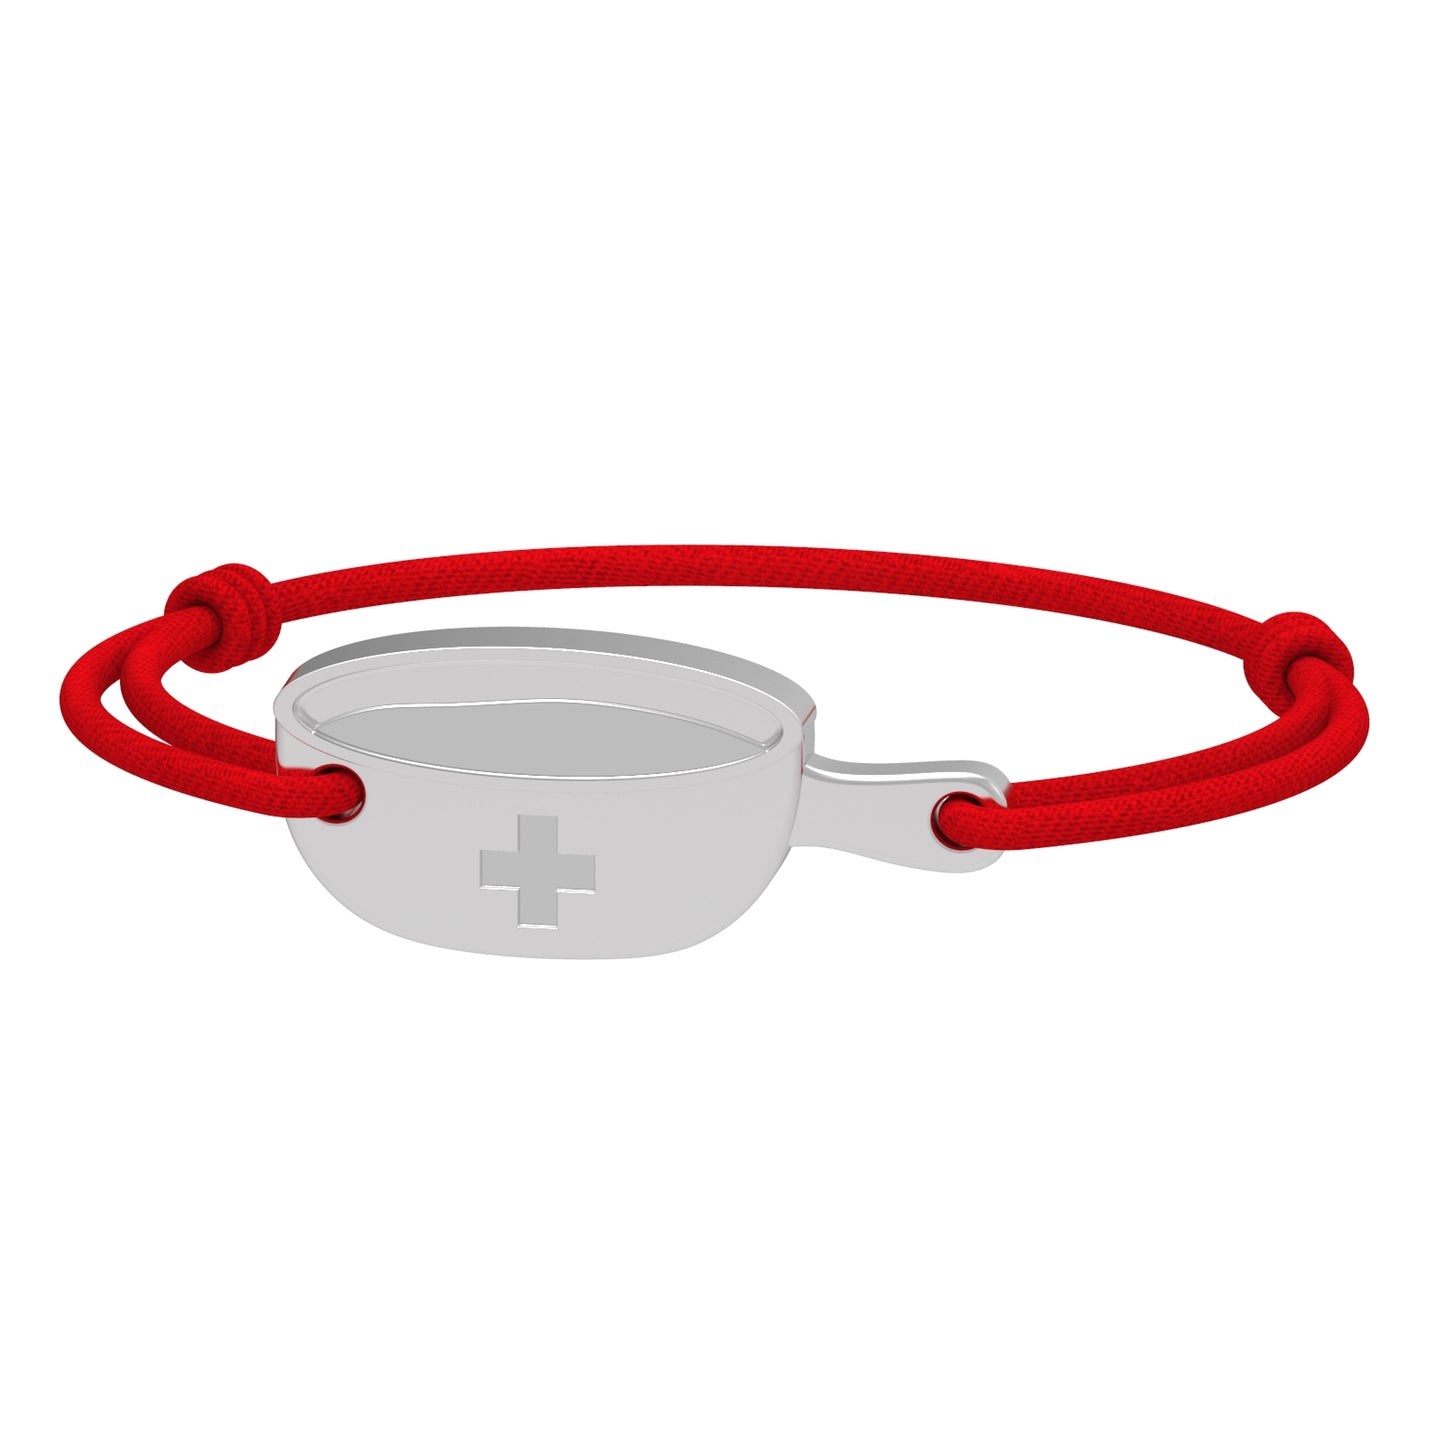 Dessin 3D du bracelet SwissFondue en argent rhodié et cordon rouge